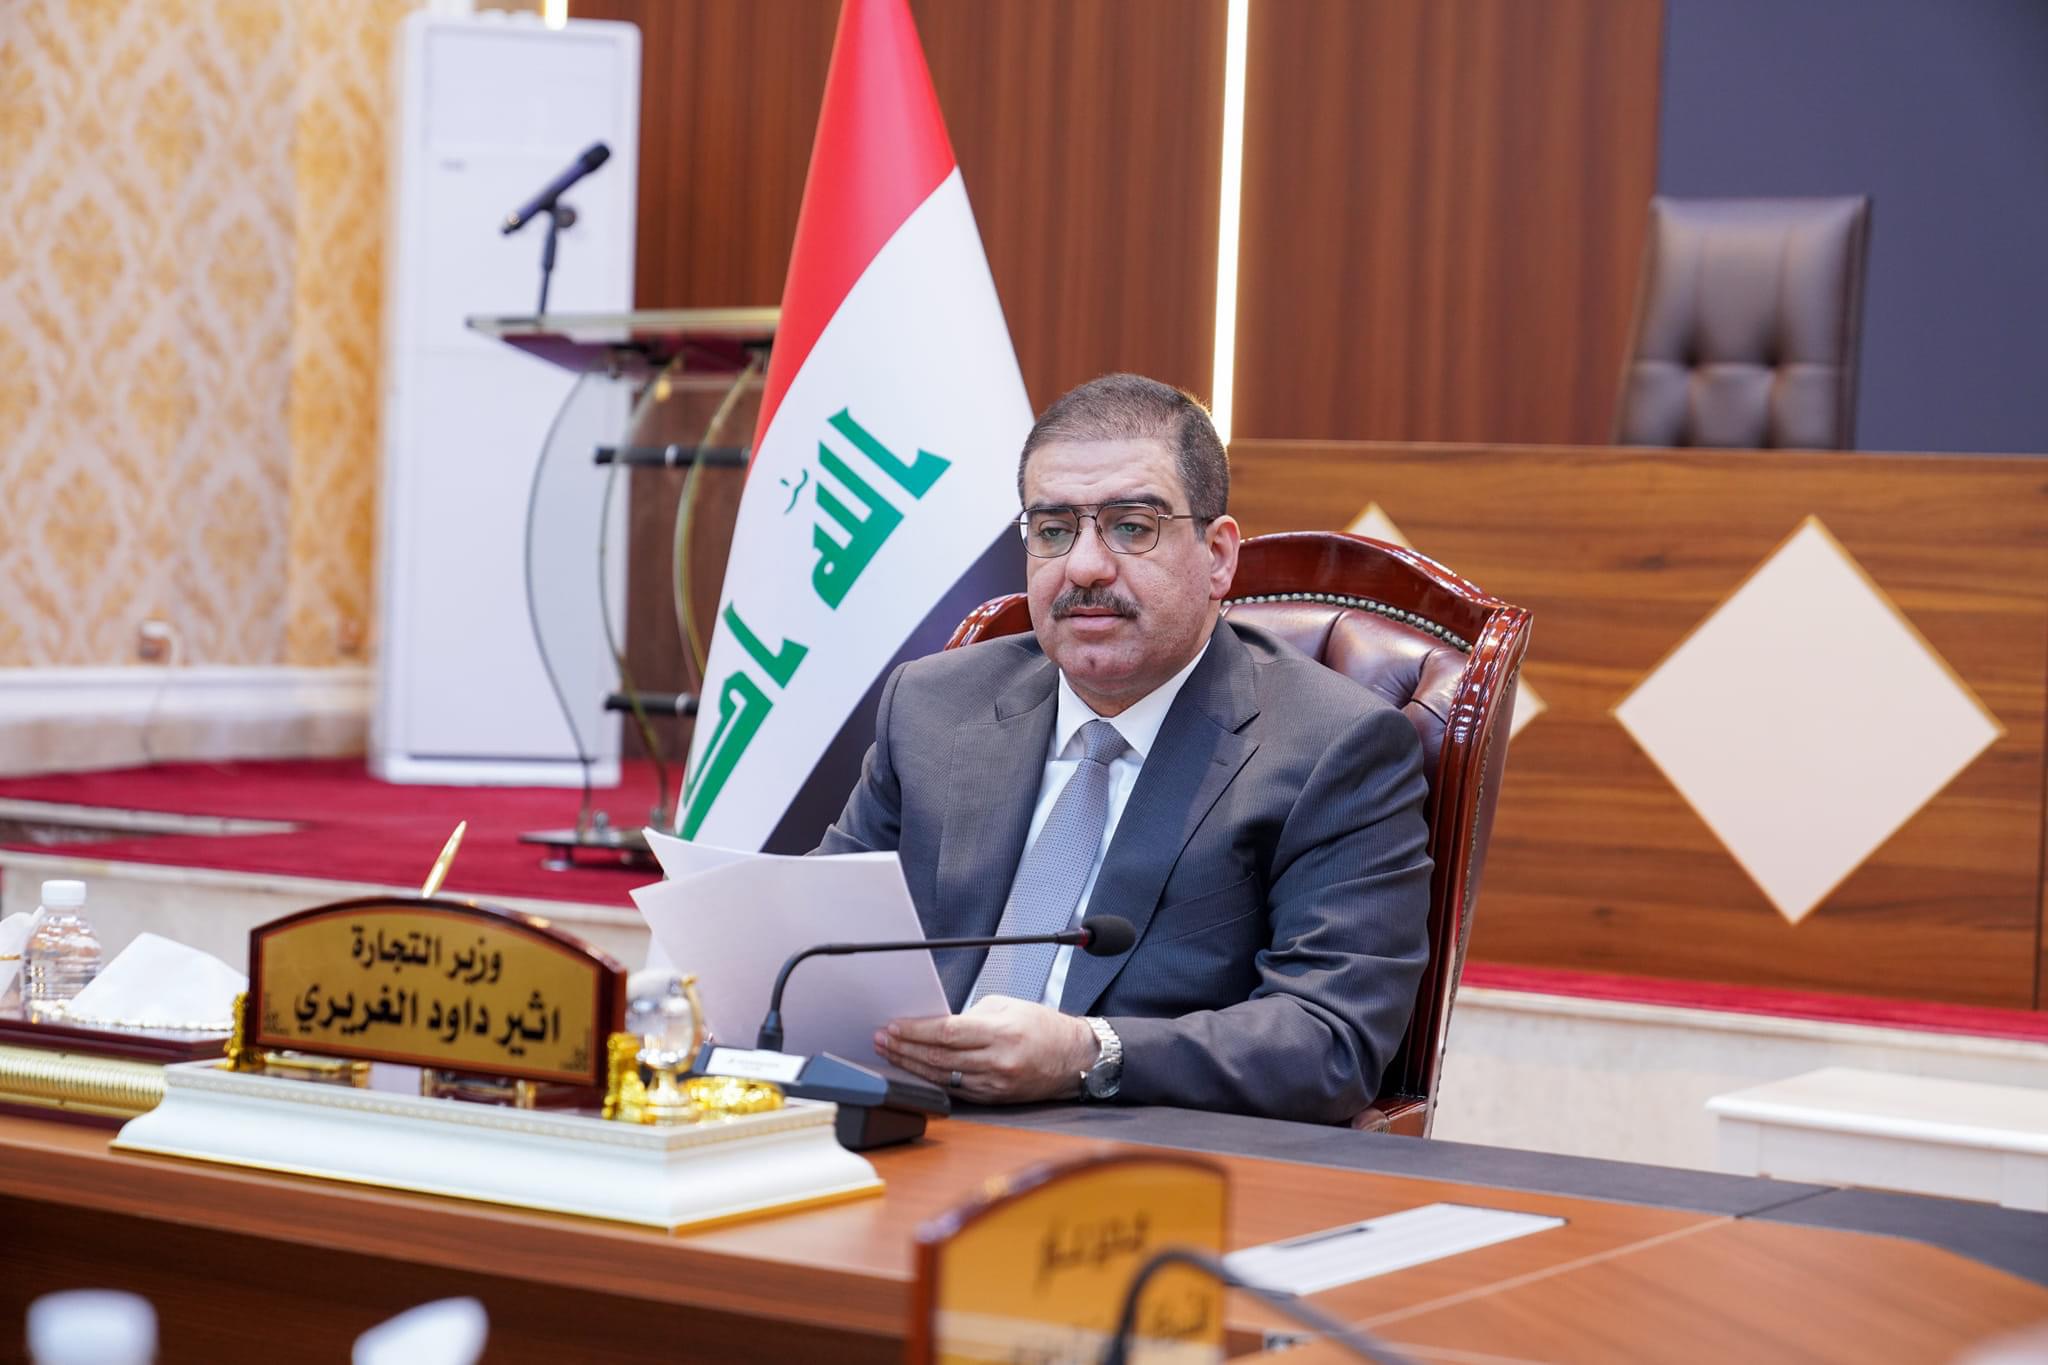 وزير التجارة مهنئاً العراقيين برأس السنة الجديدة: نجحنا بتأمين الامن الغذائي وتجاوز تحديات كبيرة